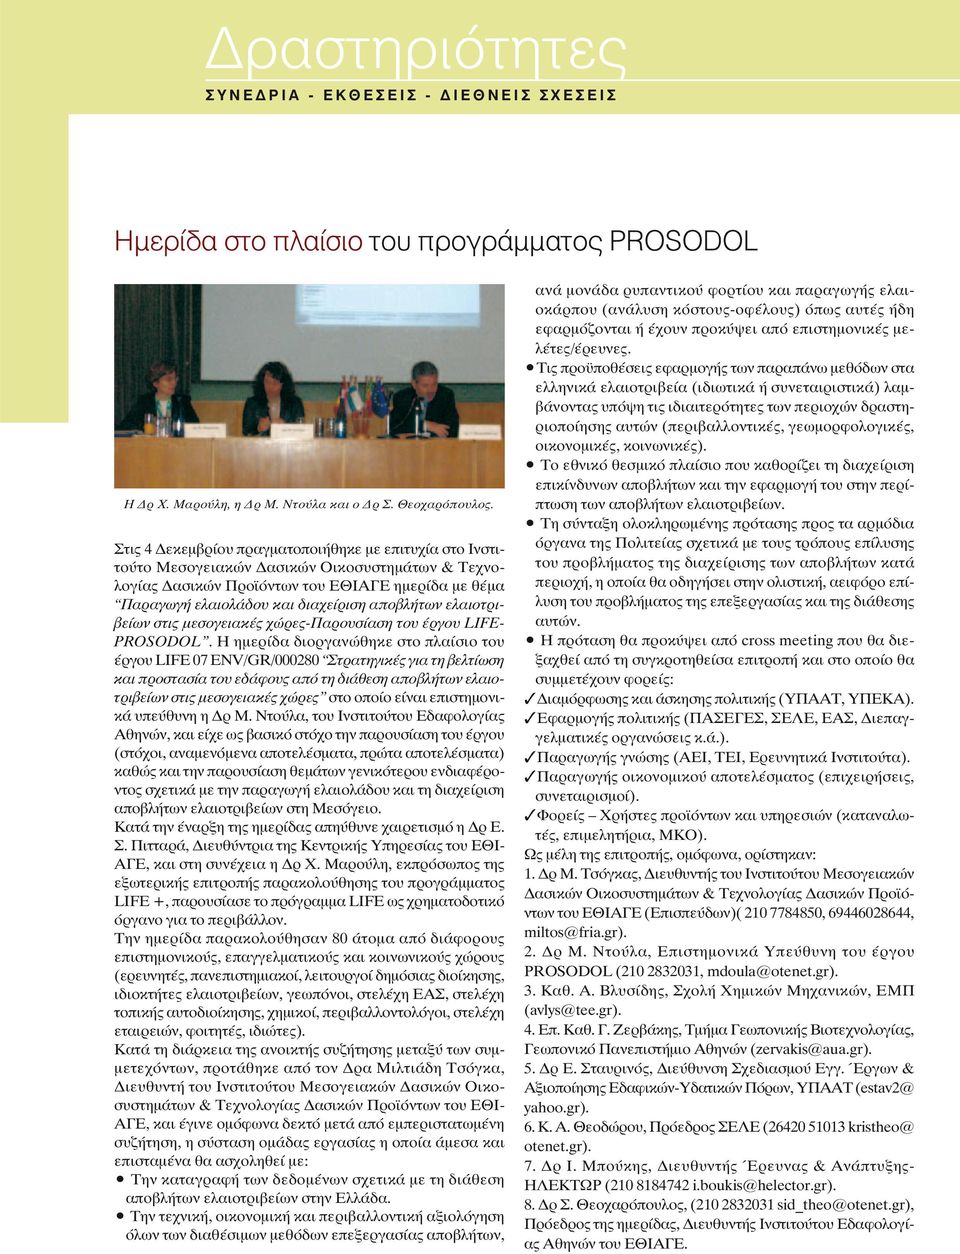 αποβλήτων ελαιοτριβείων στις μεσογειακές χώρες-παρουσίαση του έργου LIFE- PROSODOL.